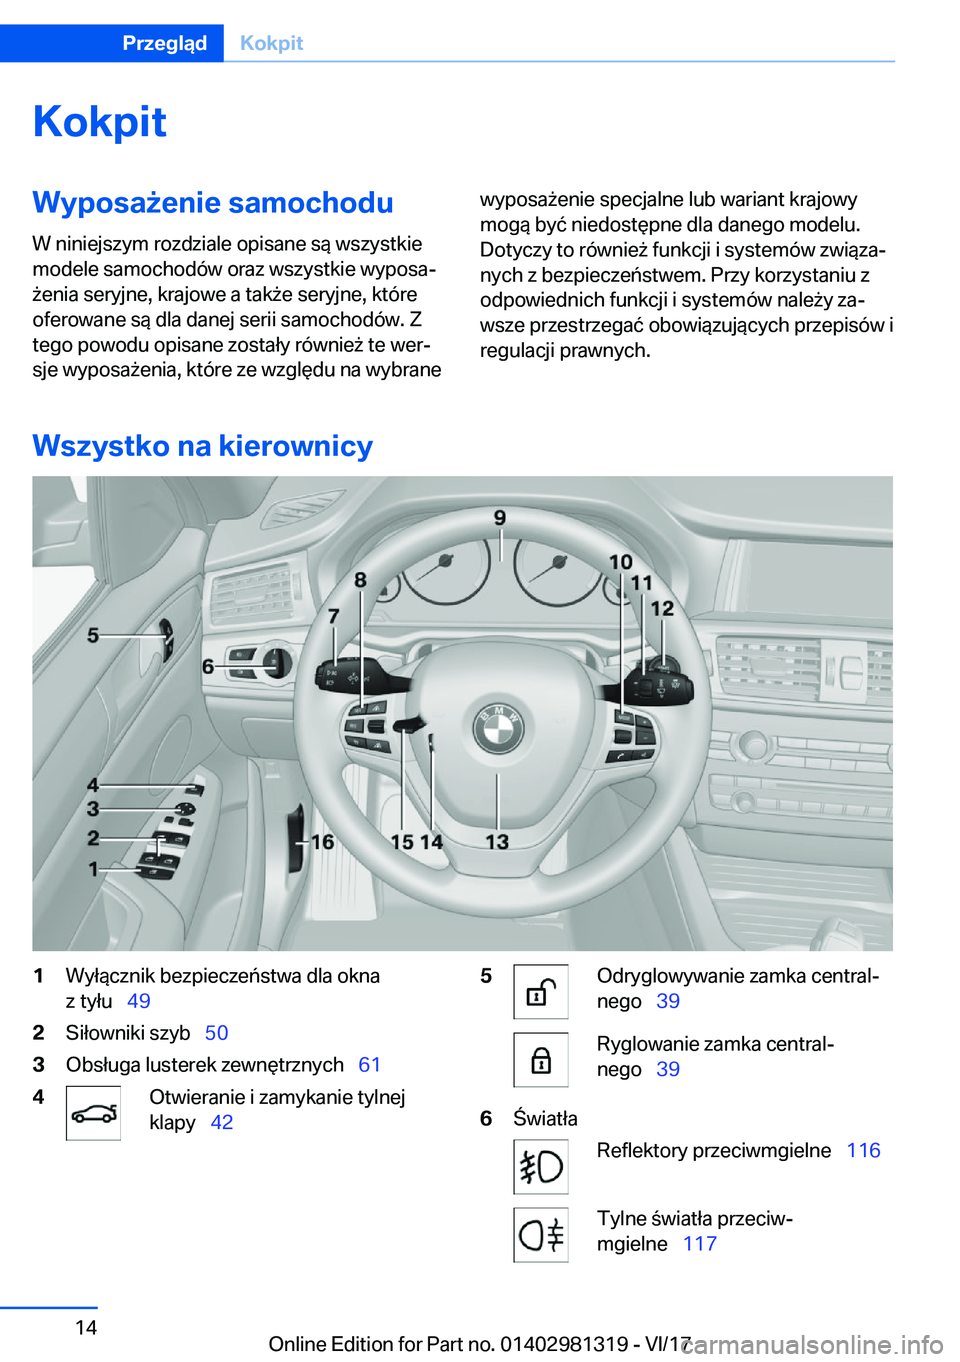 BMW X4 2018  Instrukcja obsługi (in Polish) �K�o�k�p�i�t�W�y�p�o�s�a9�e�n�i�e��s�a�m�o�c�h�o�d�u�W� �n�i�n�i�e�j�s�z�y�m� �r�o�z�d�z�i�a�l�e� �o�p�i�s�a�n�e� �s�